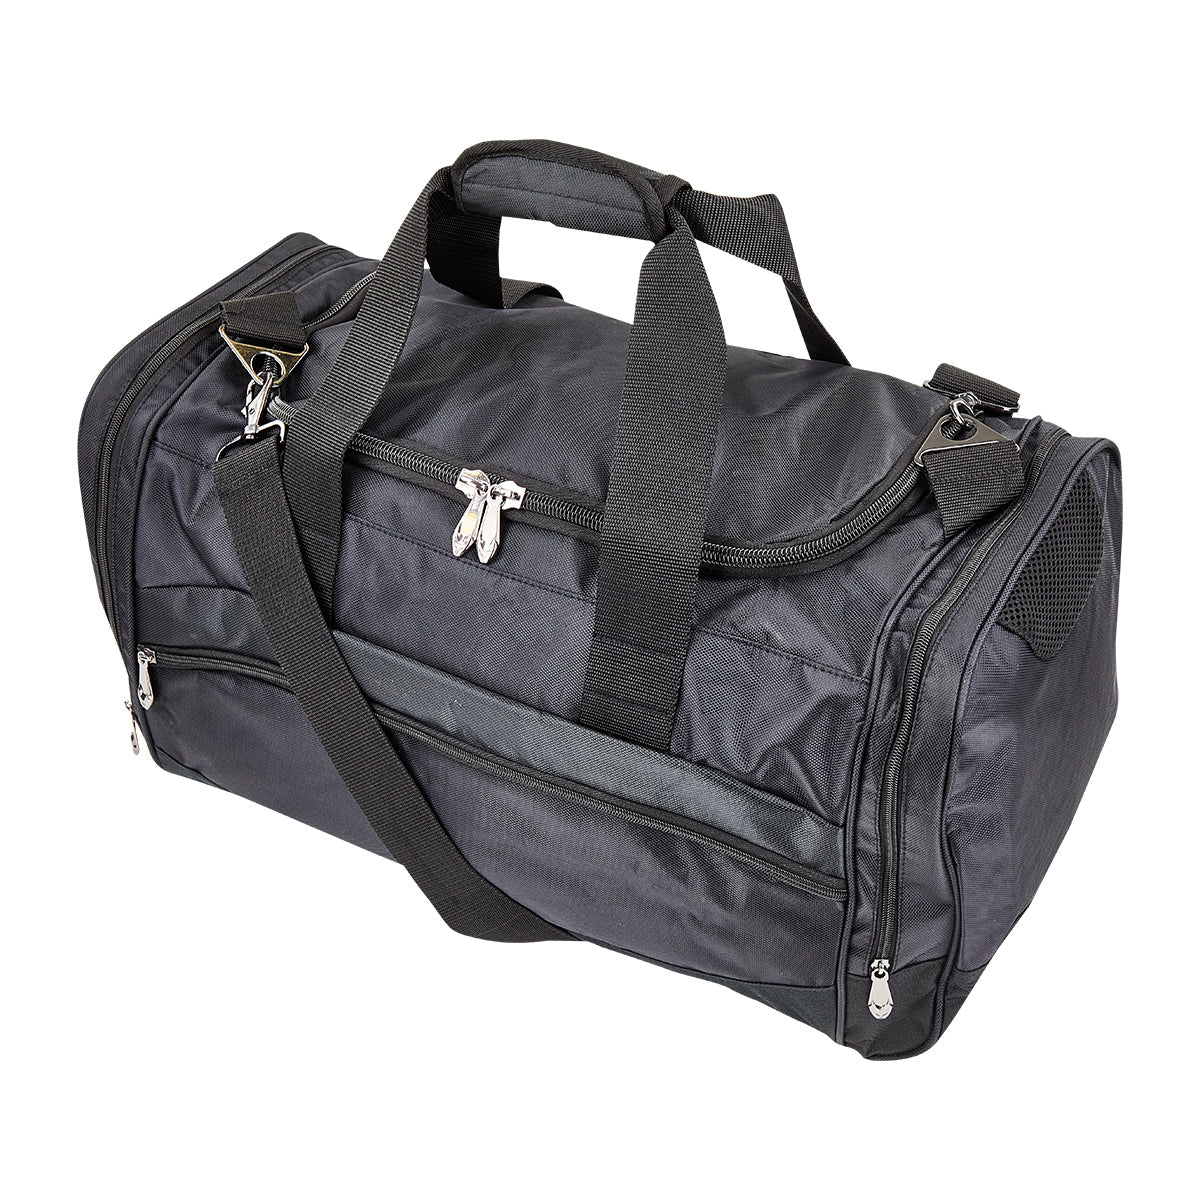 Premium Sport Bag - Medium Medium Black